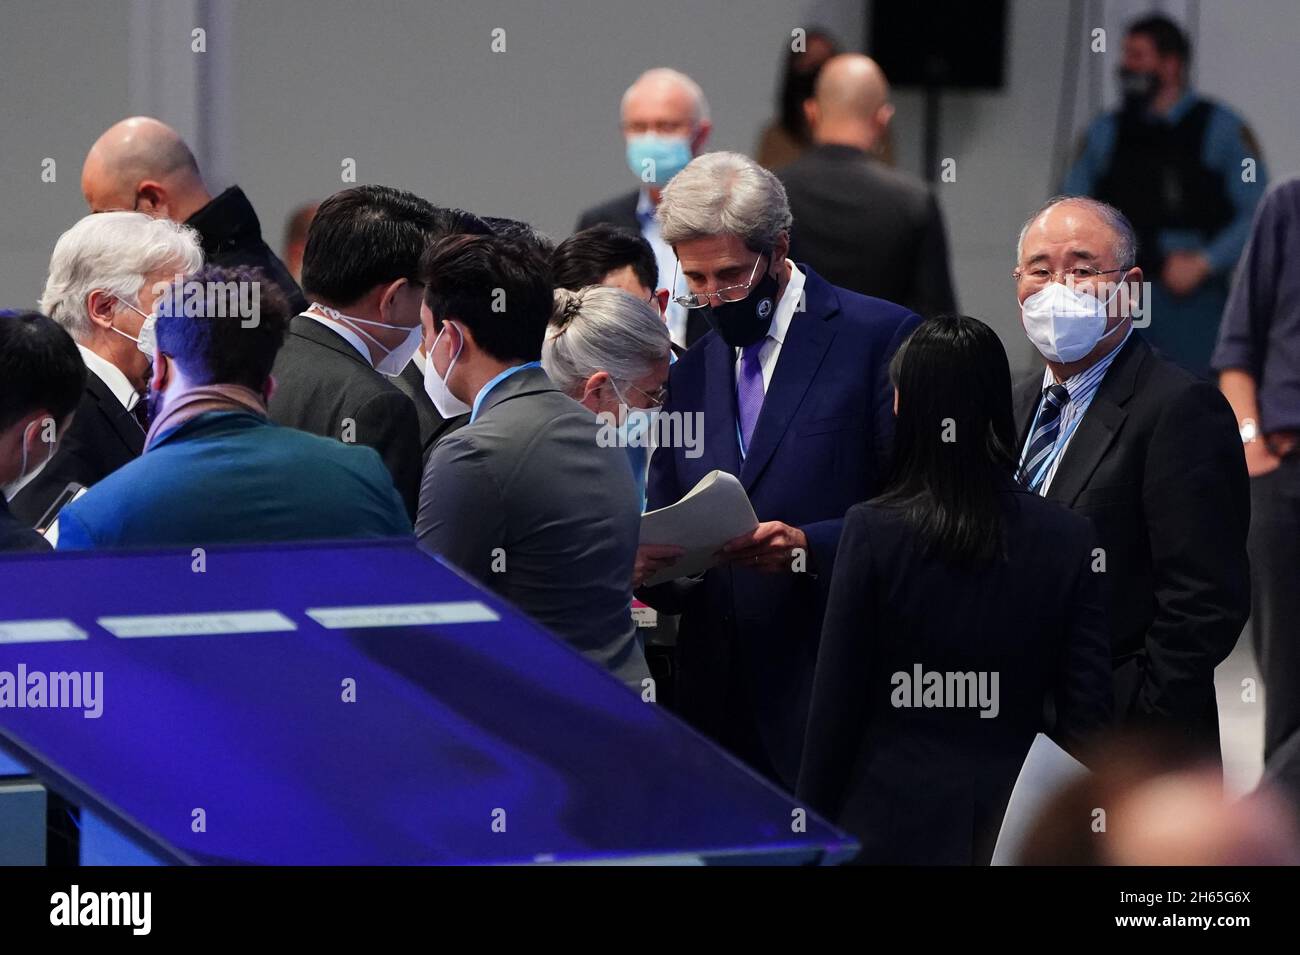 DER SONDERBEAUFTRAGTE des US-Präsidenten für den Klimaschutz, John Kerry, spricht während eines „Overun“-Tages des Cop26-Gipfels in Glasgow mit Delegierten aus China auf einer informellen Plenarsitzung zur Bestandsaufnahme. Bilddatum: Samstag, 13. November 2021. Stockfoto